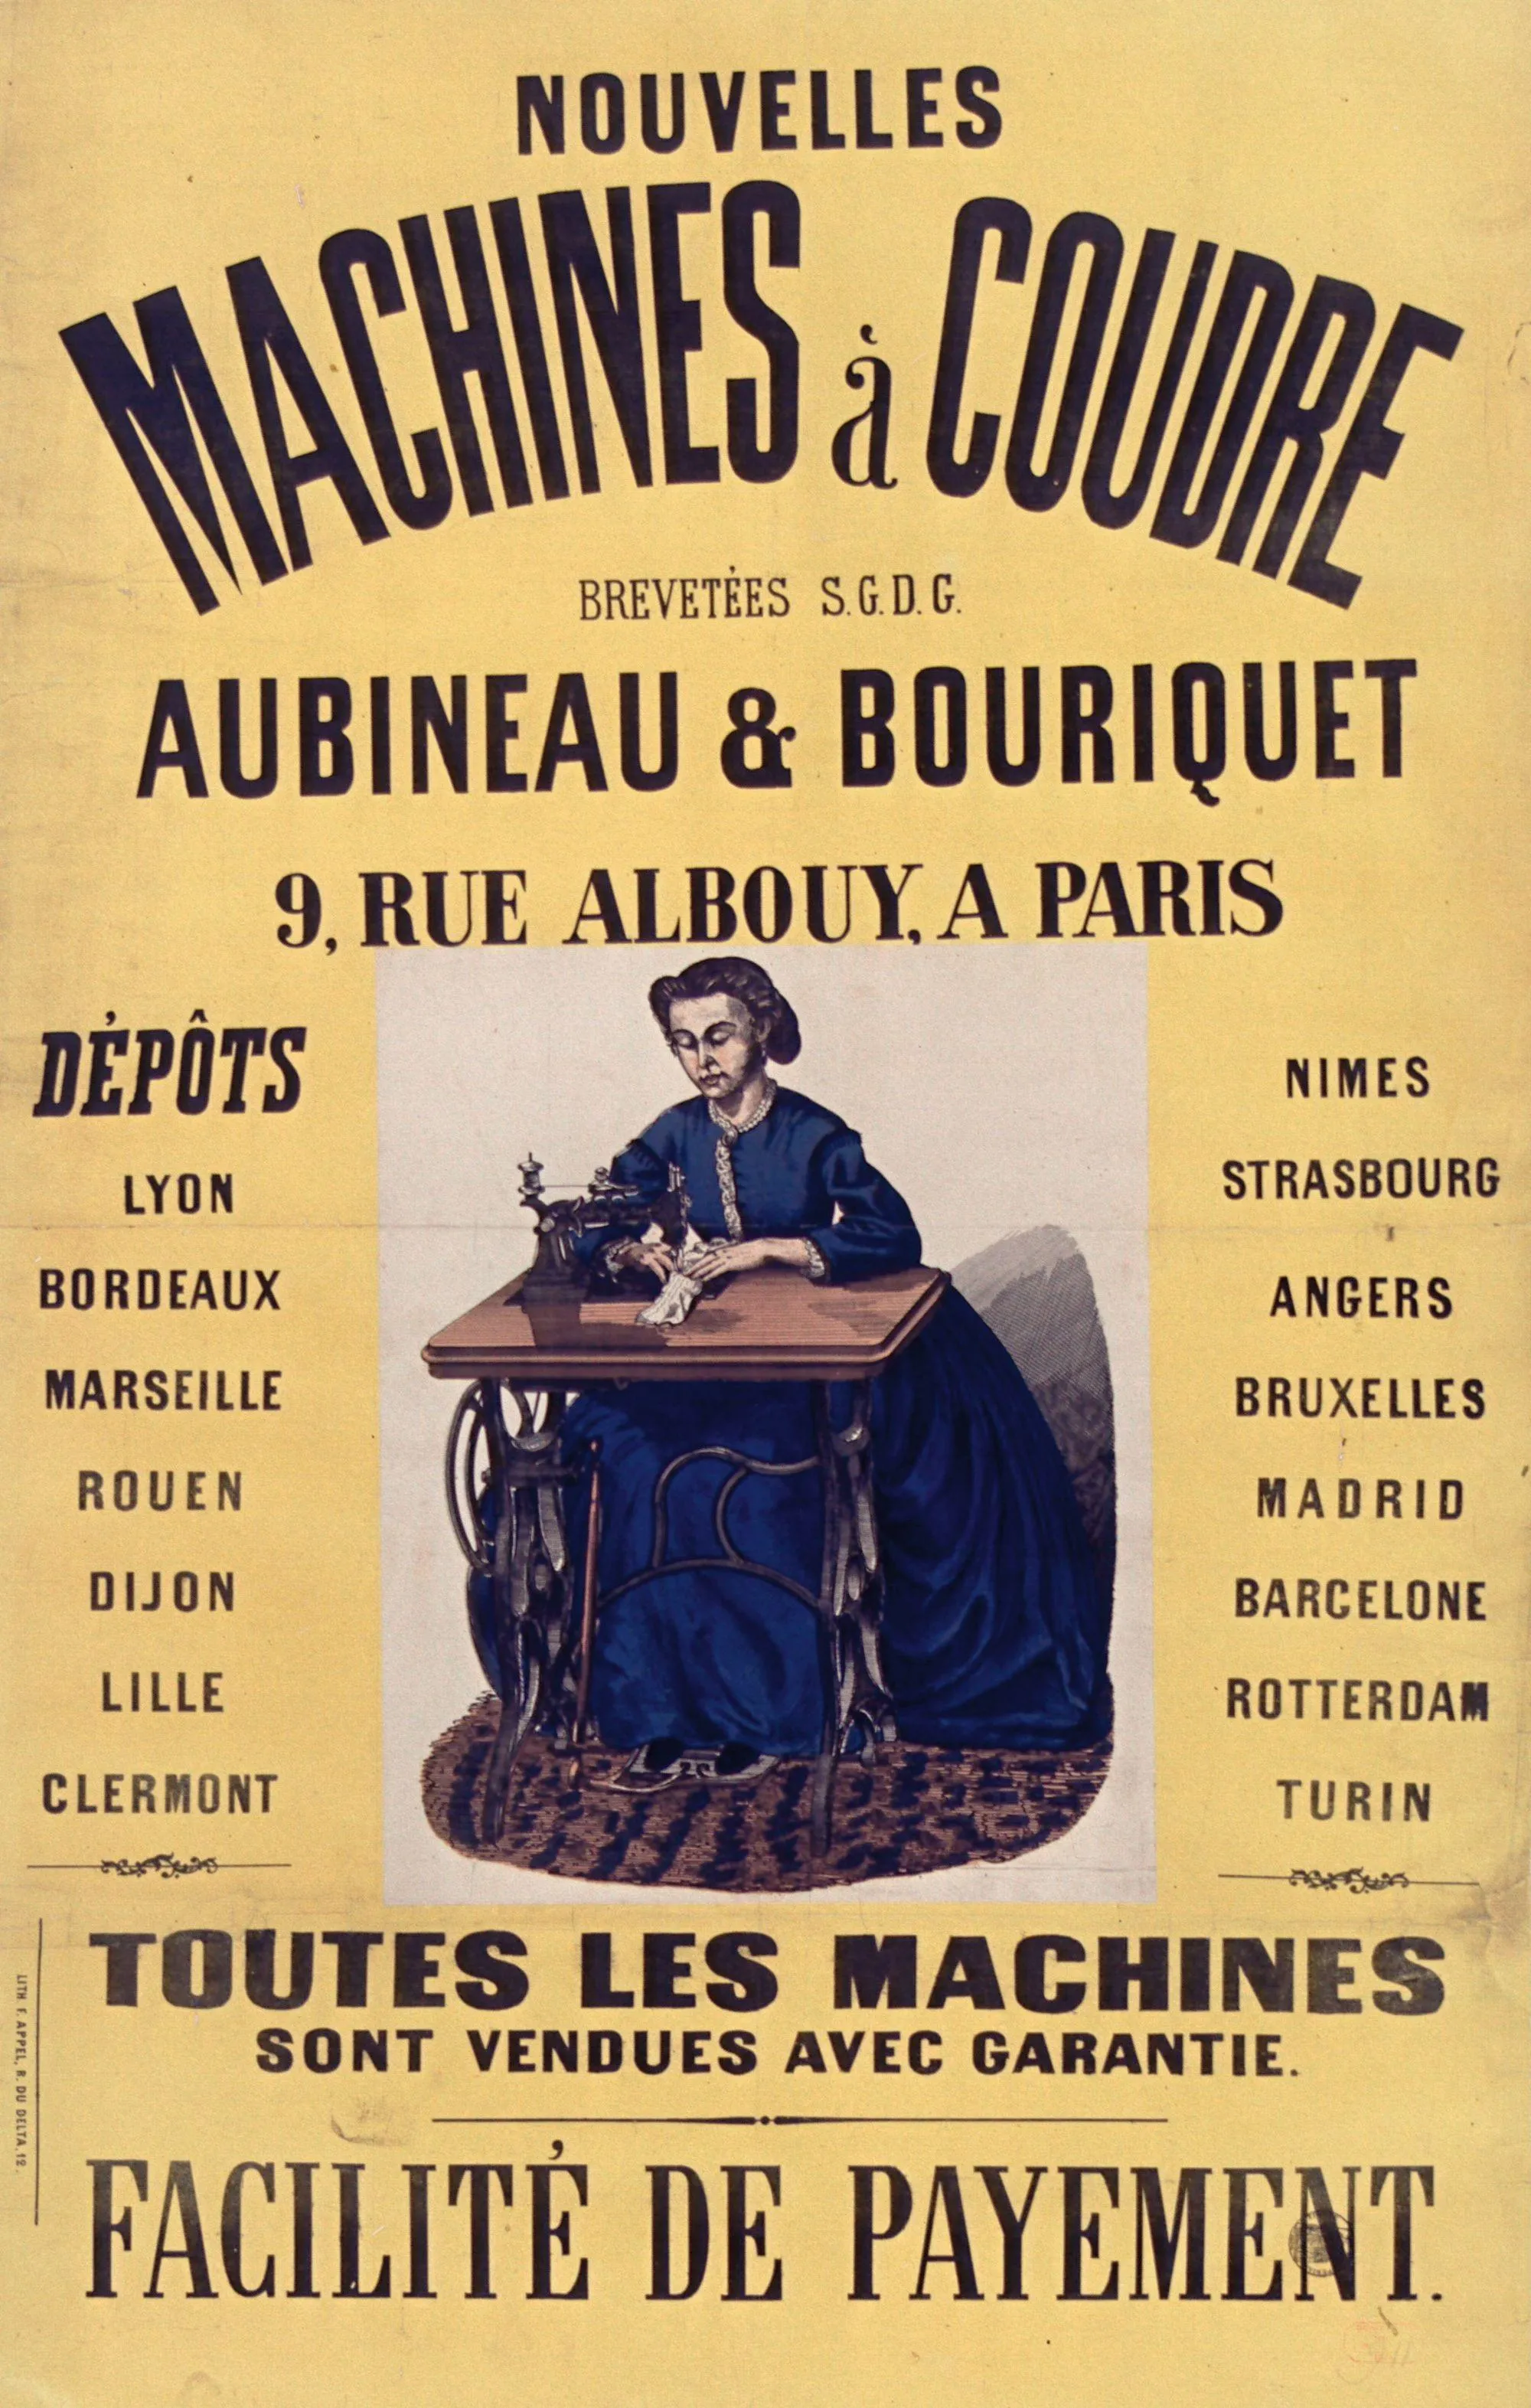 Machine à coudre Aubineau et Bouriquet, 1866,
lithographie en couleur, 106 x 68 cm, BnF, Paris.